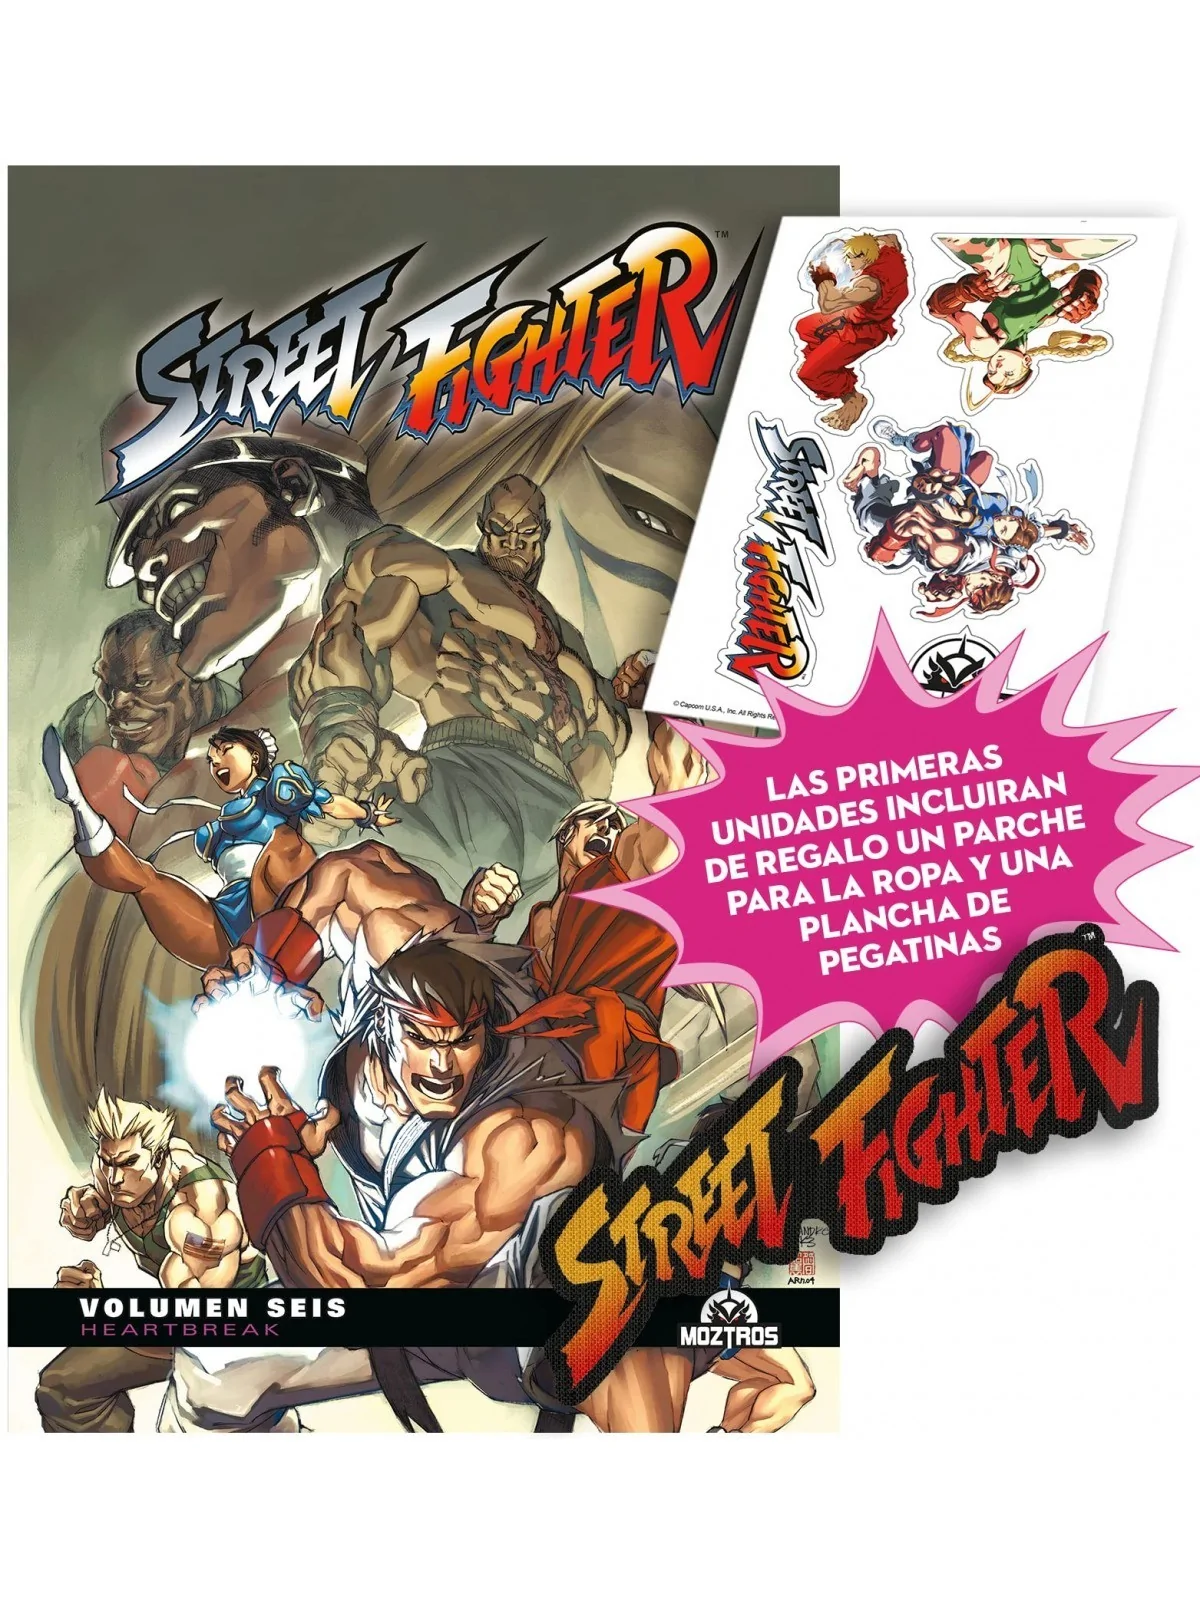 Comprar Street Fighter 06 barato al mejor precio 19,86 € de Moztros